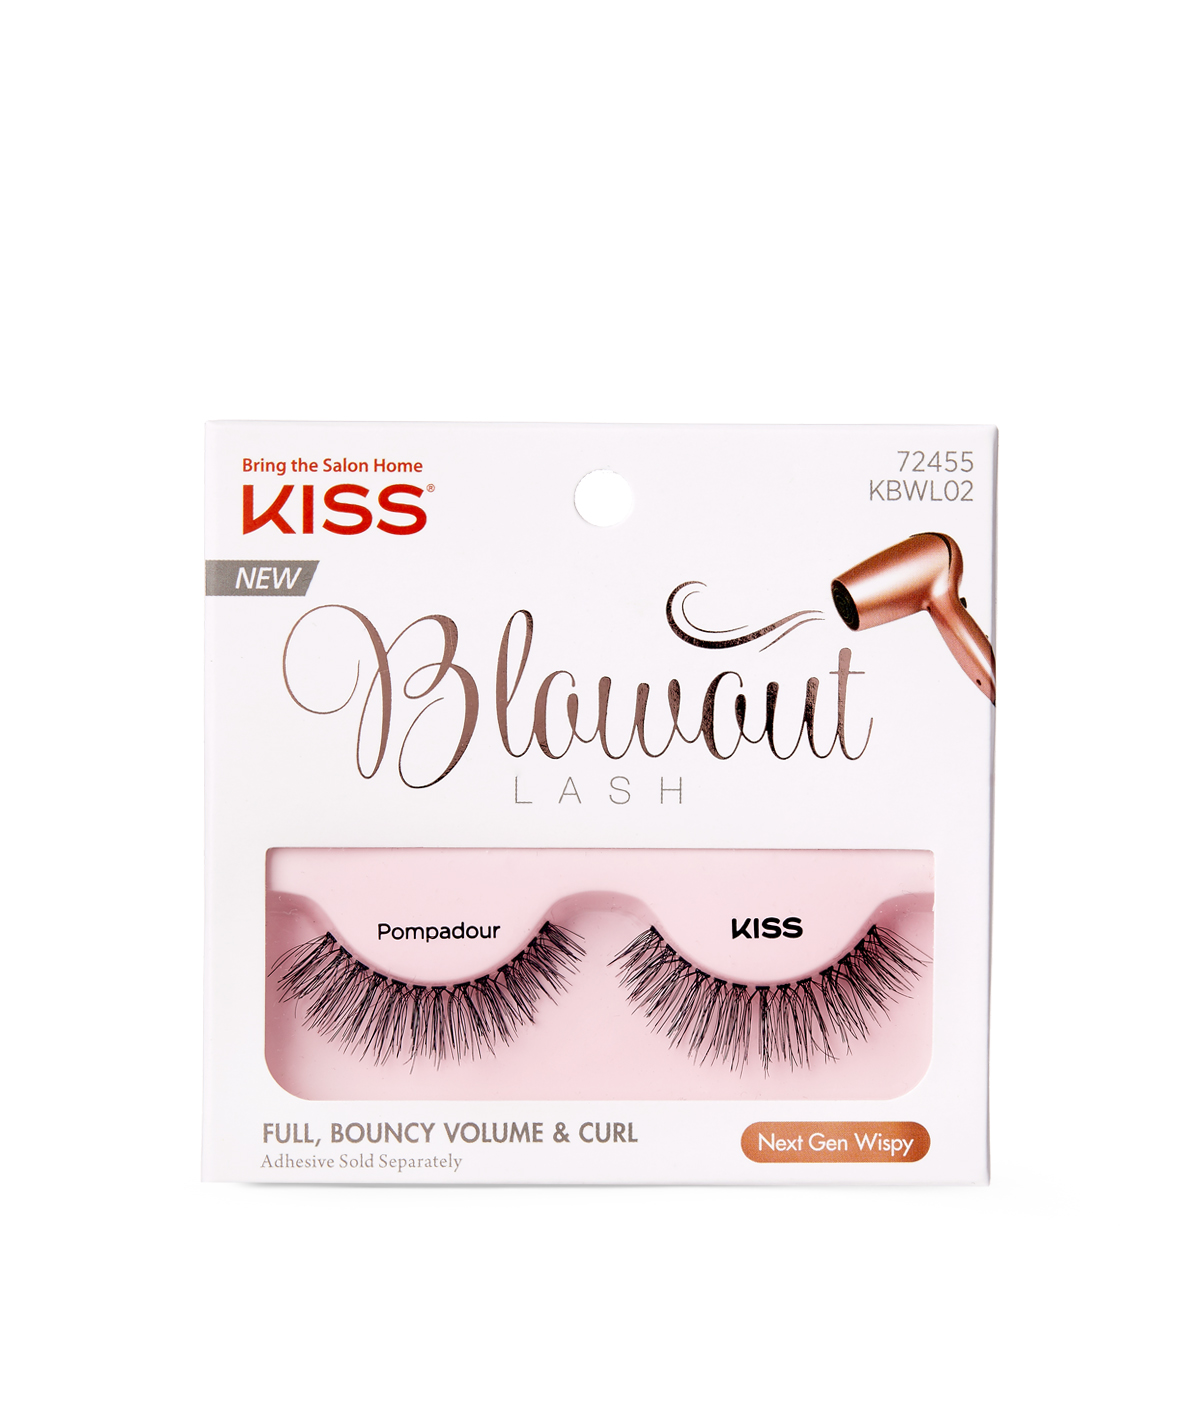 Kiss Blowout Lash in Pompadour, 1 pair